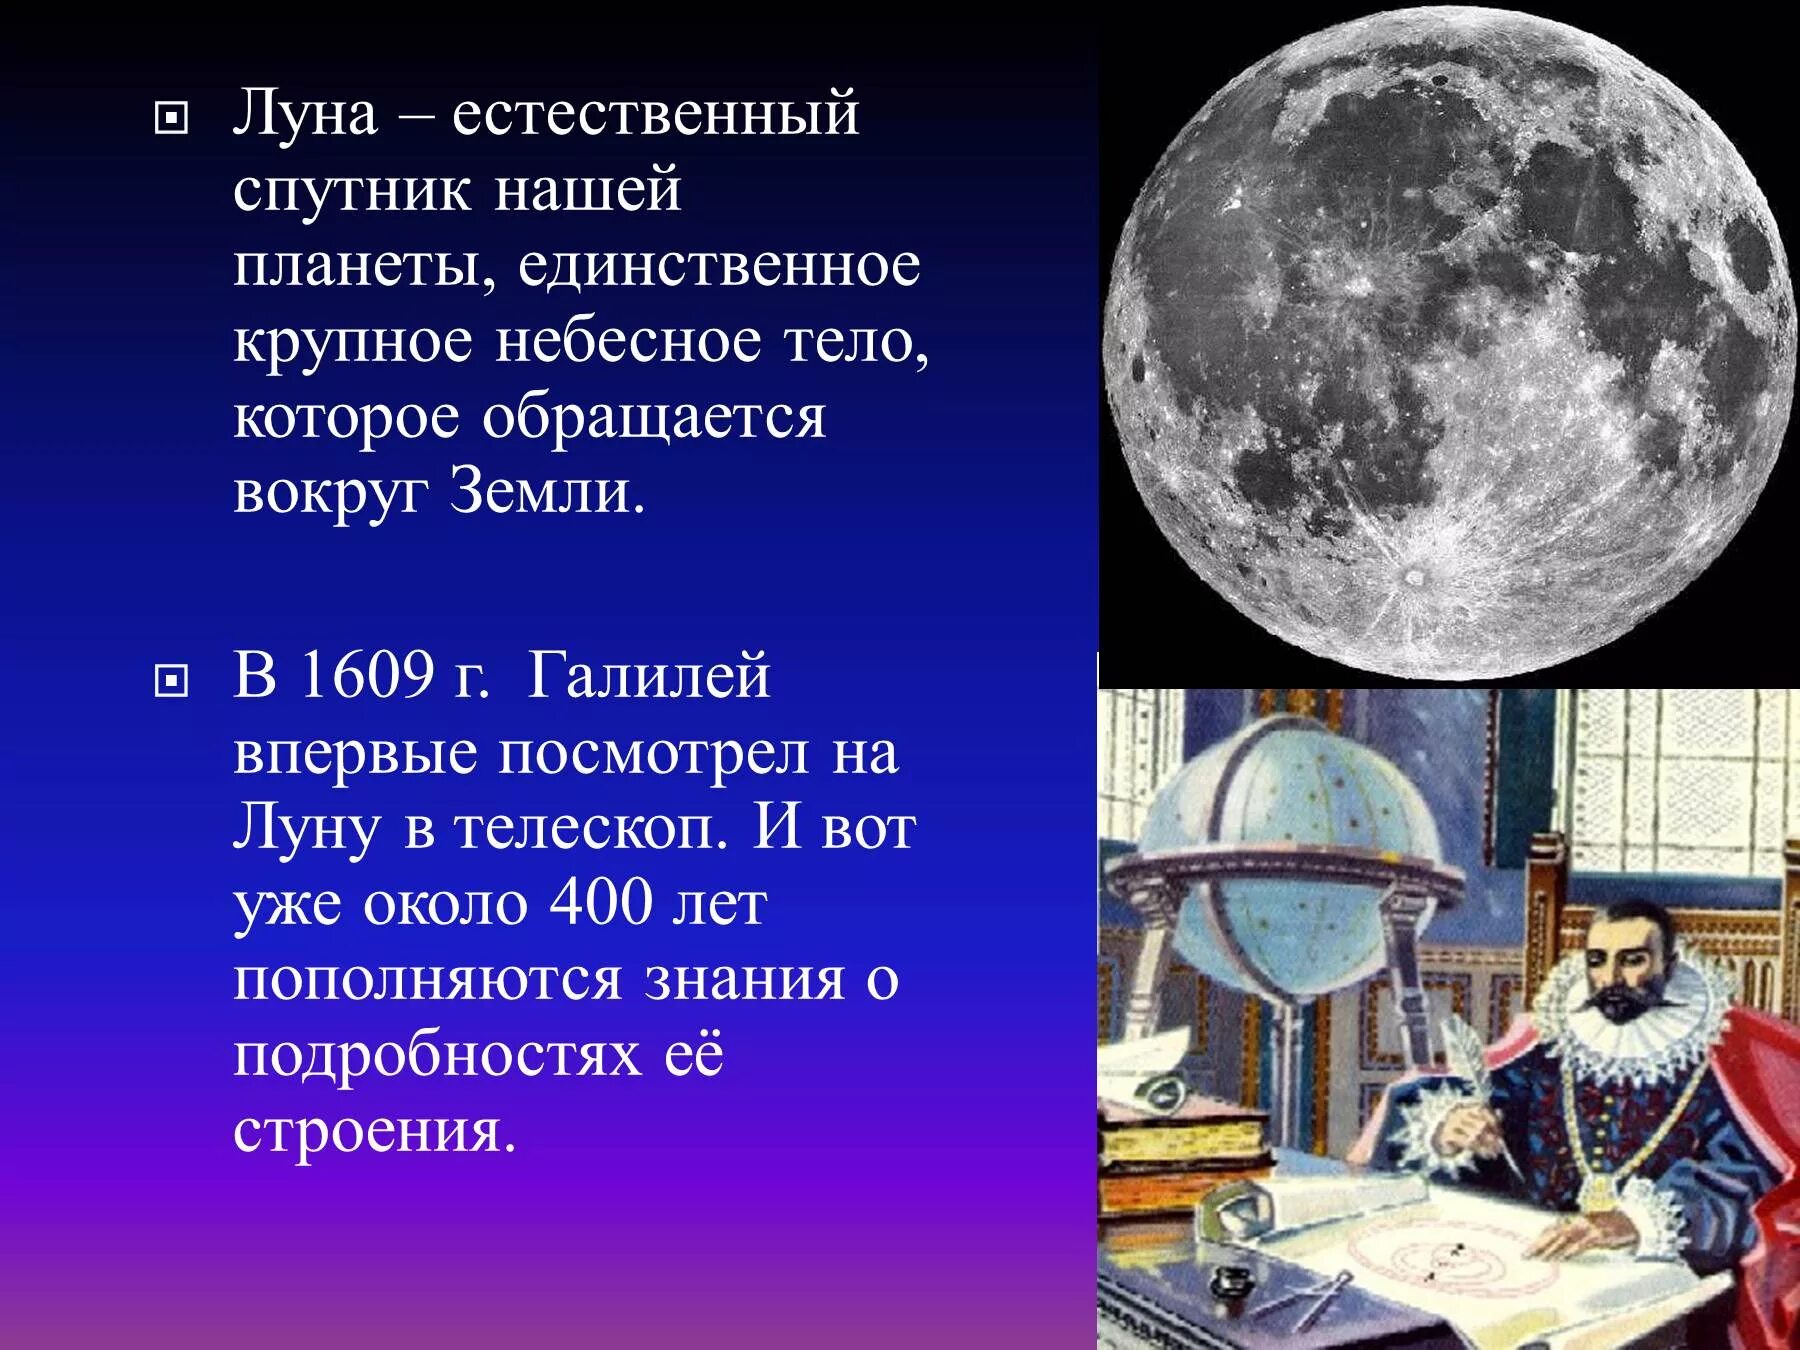 Спутники земли является луна. Луна естественный Спутник земли. Луна для презентации. Общие сведения о Луне. Луна единственный естественный Спутник нашей планеты.